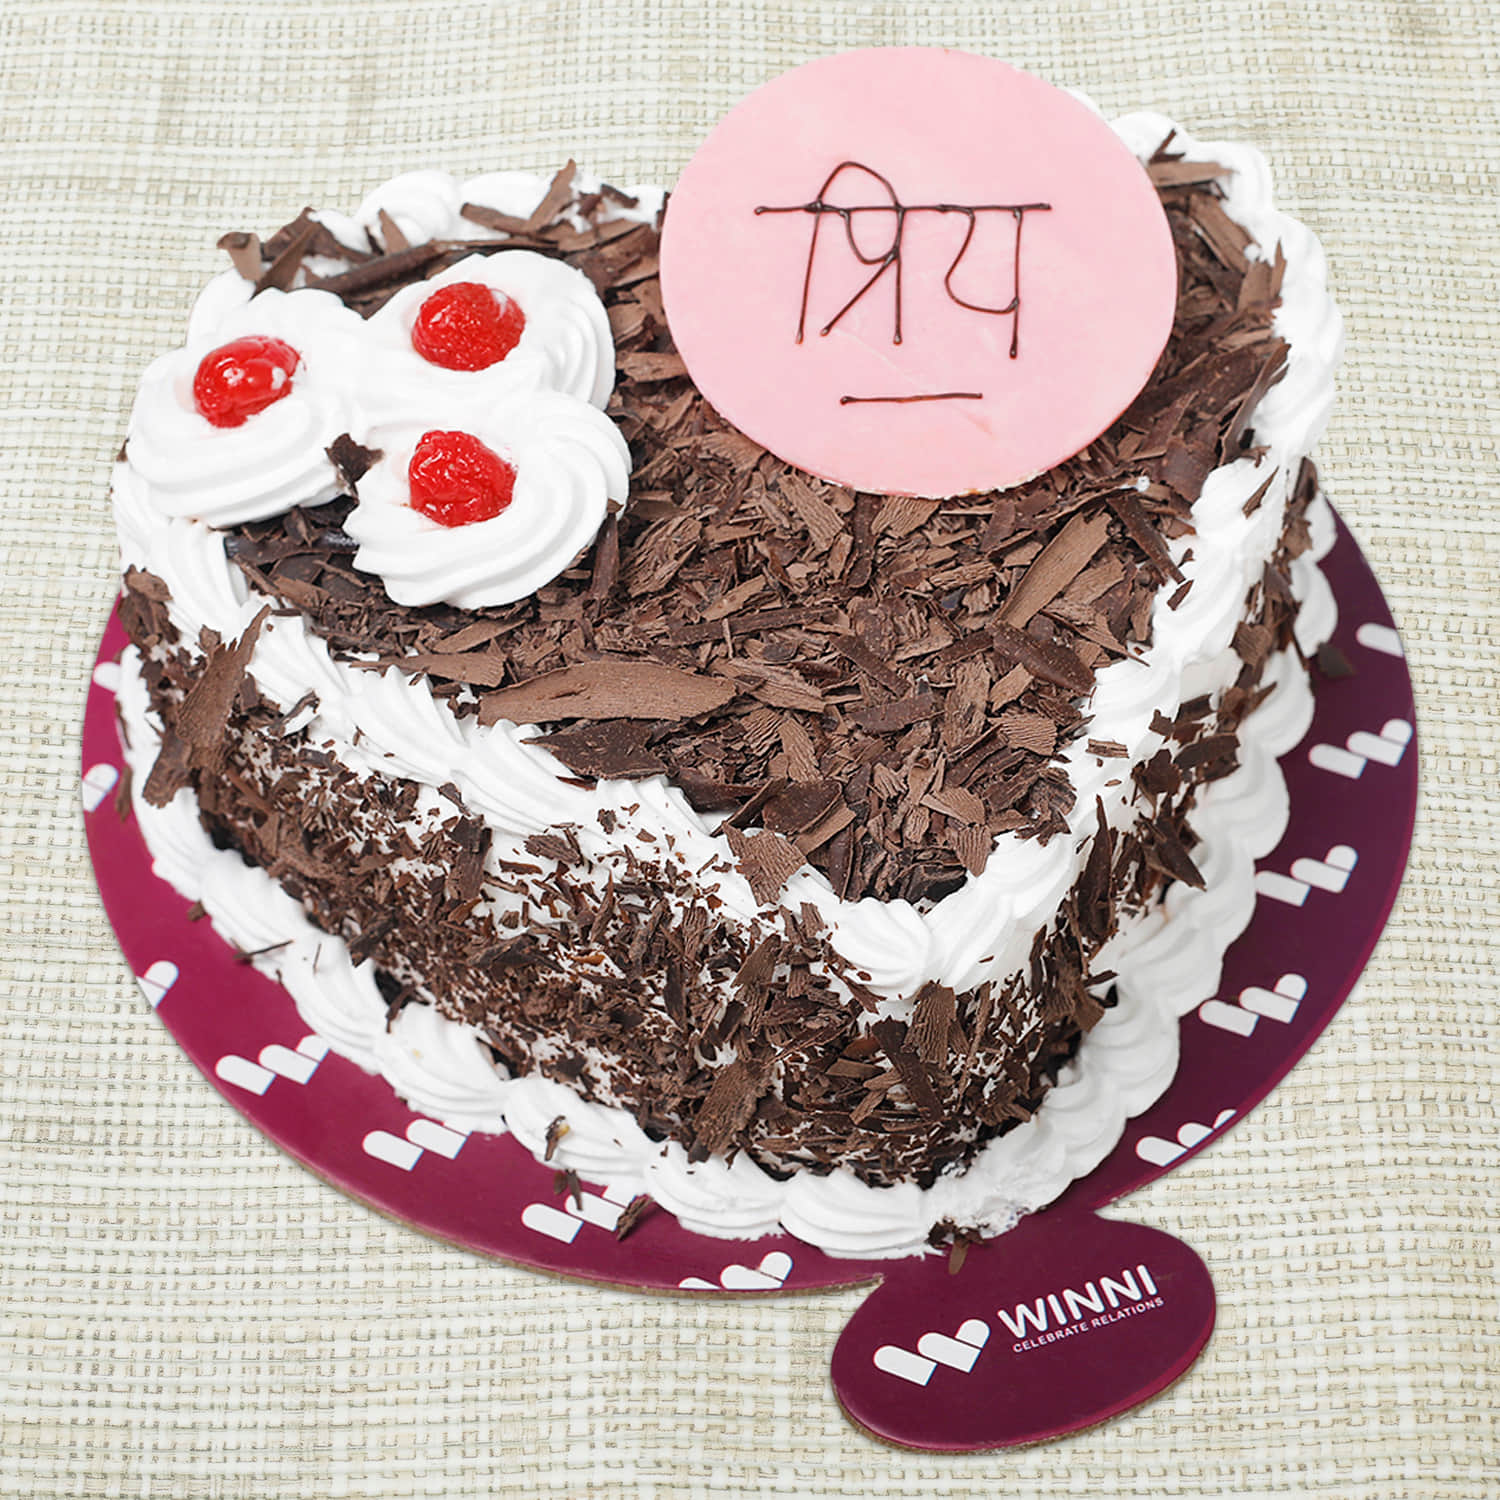 Chocolate Cake image for Priya's Birthday. | Happy birthday cake pictures,  Happy birthday chocolate cake, Cake name